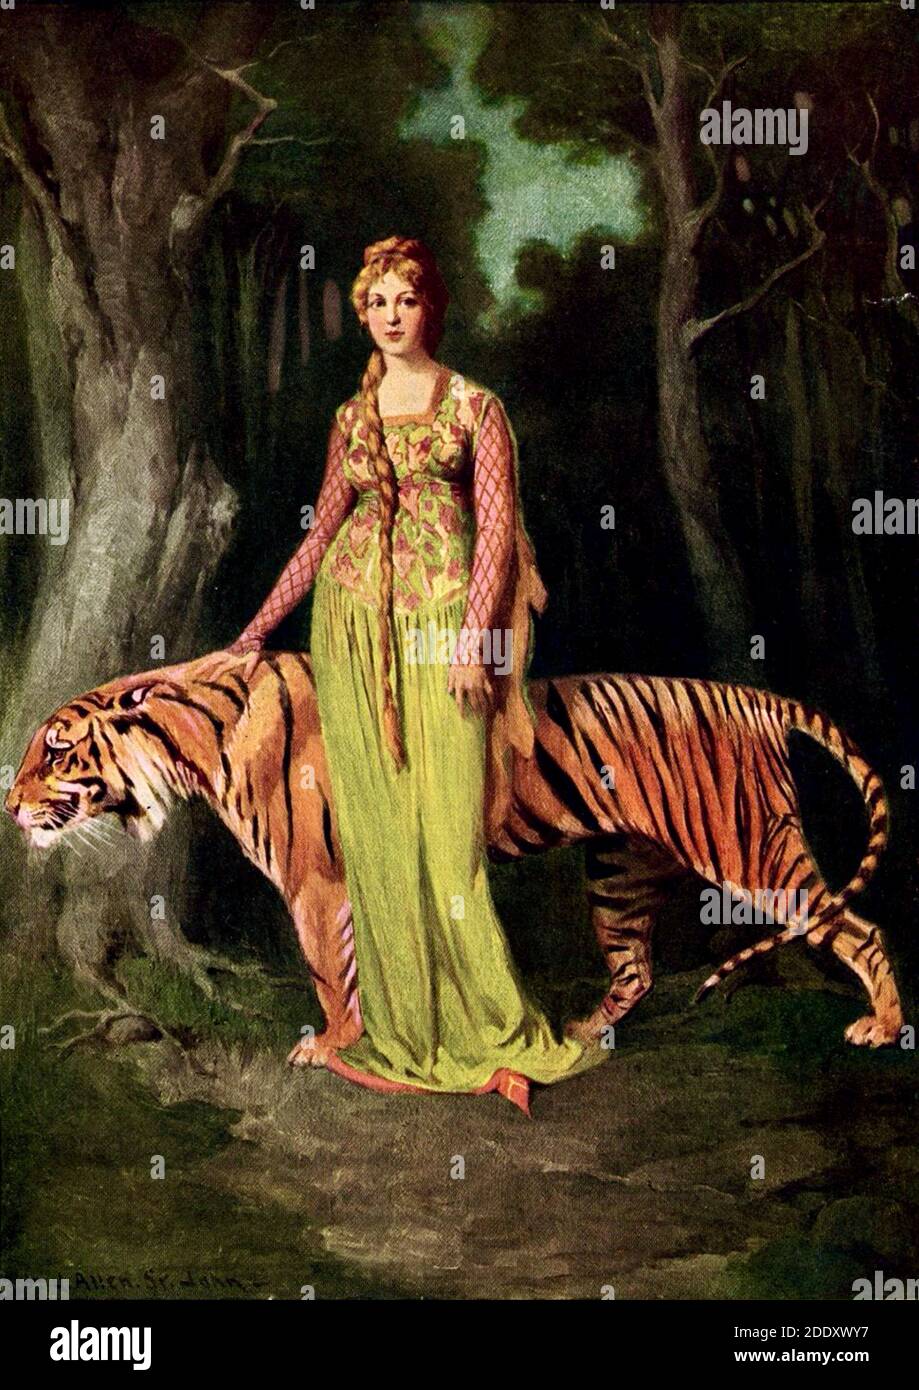 Image tirée du livre 'face in the Pool, écrit et illustré par James Allen St John. La femme photographiée est la princesse Astrella avec un tigre. Banque D'Images